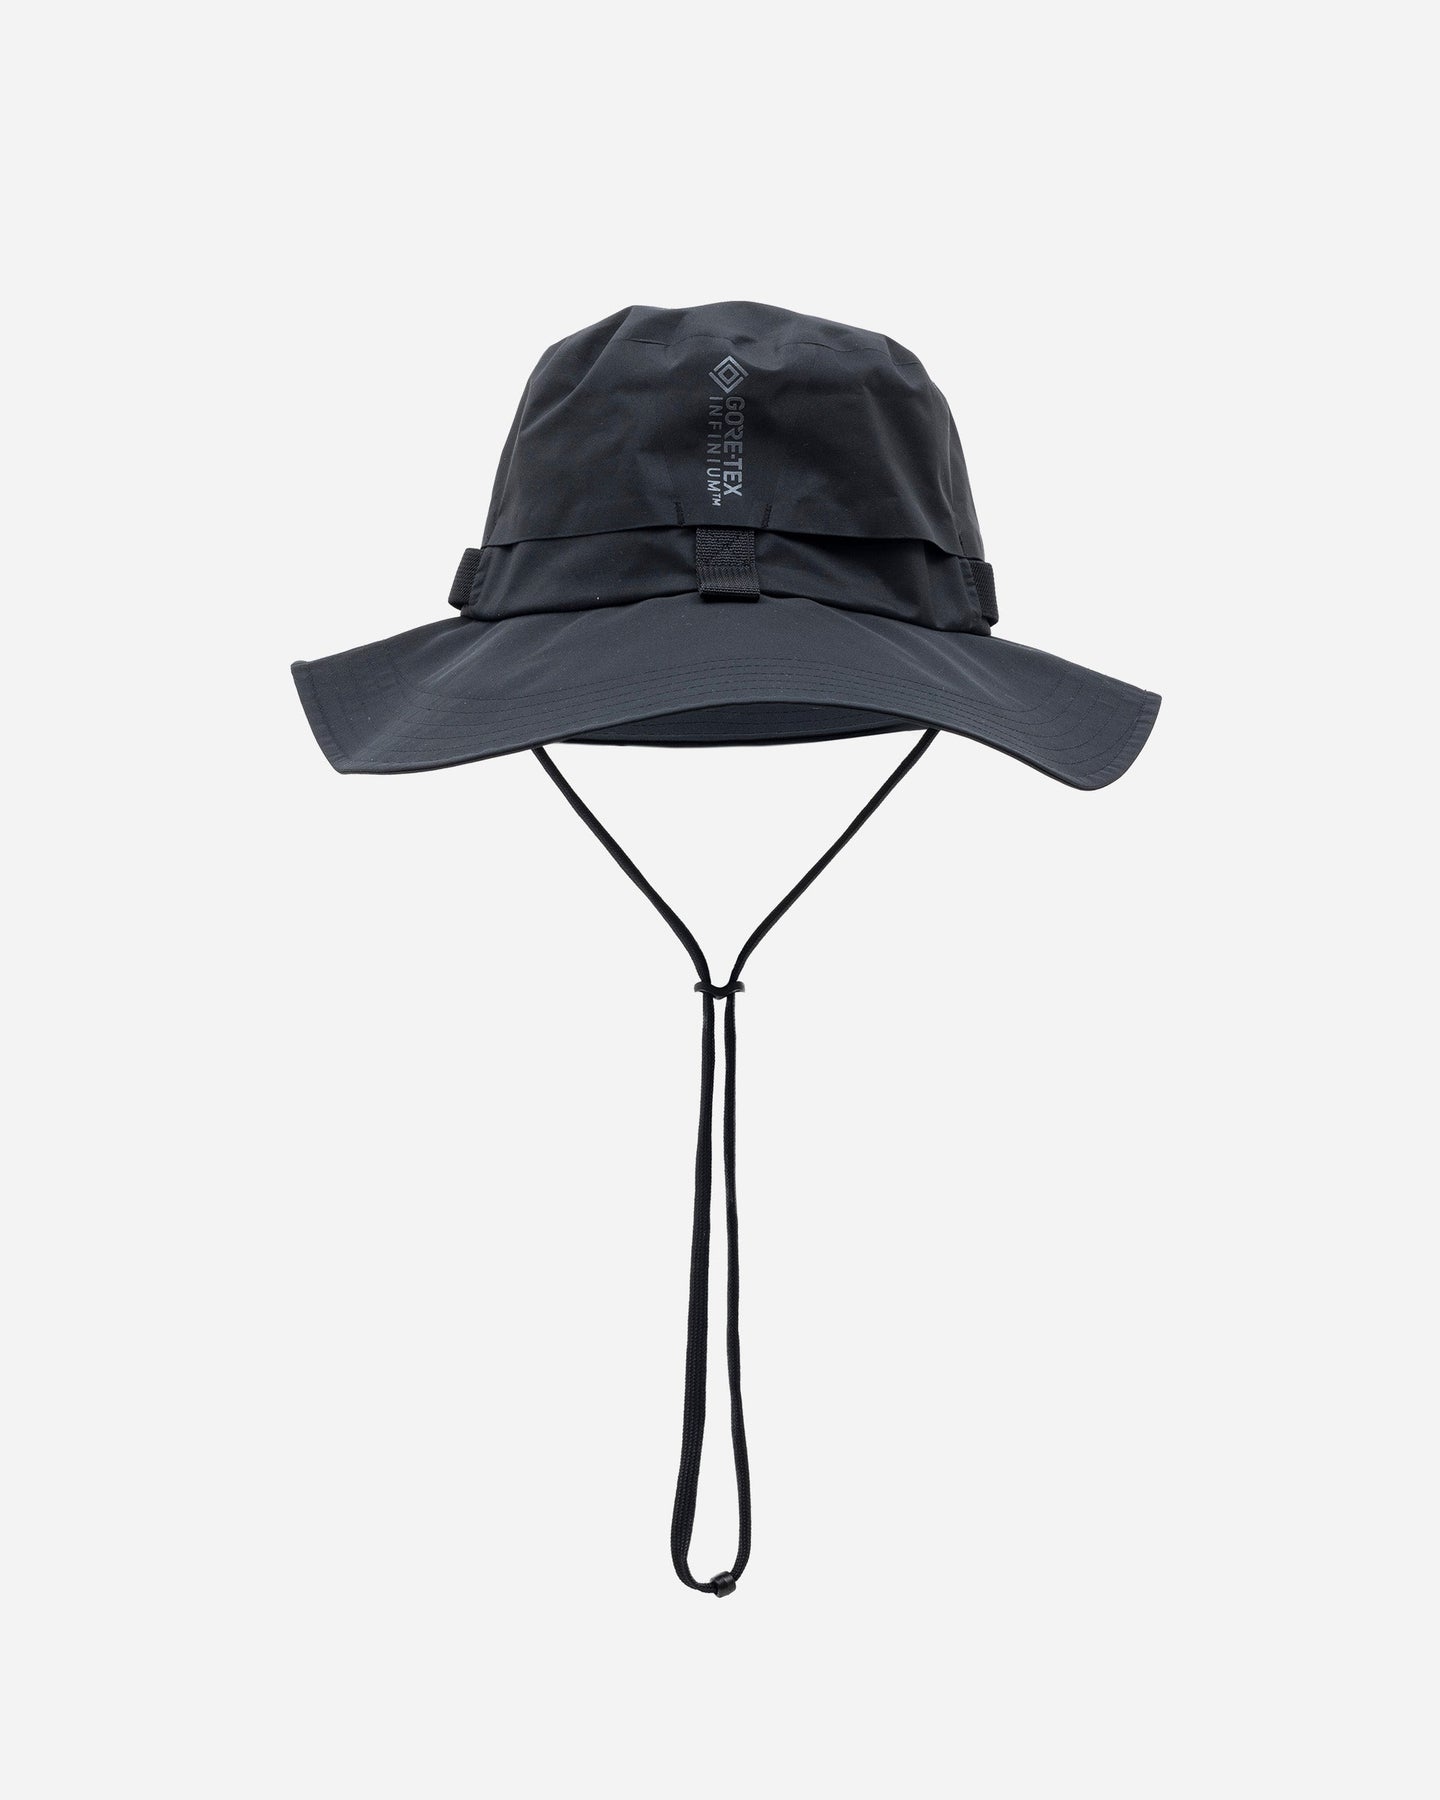 ナイキ エイペックス ACG バケットハット Mサイズ - 帽子